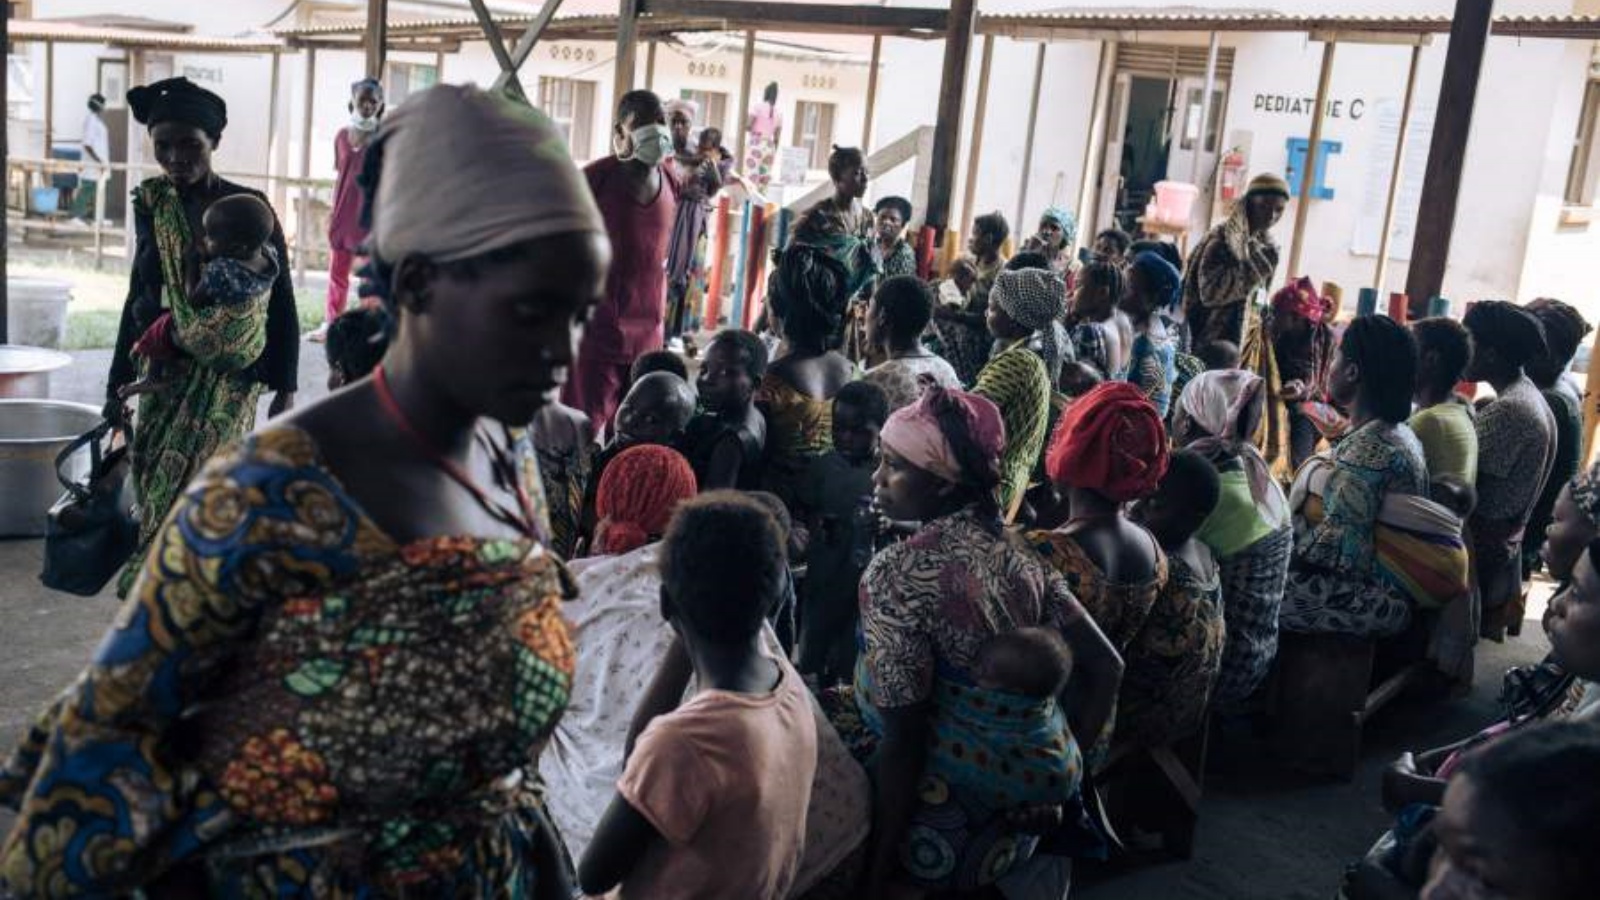 الآباء والأمهات المصاحبون لأطفالهم إلى أجنحة الأطفال يجتمعون في فصل عن تغذية الأطفال في مستشفى روتشورو في مقاطعة شمال كيفو الشرقية، جمهورية الكونغو الديمقراطية